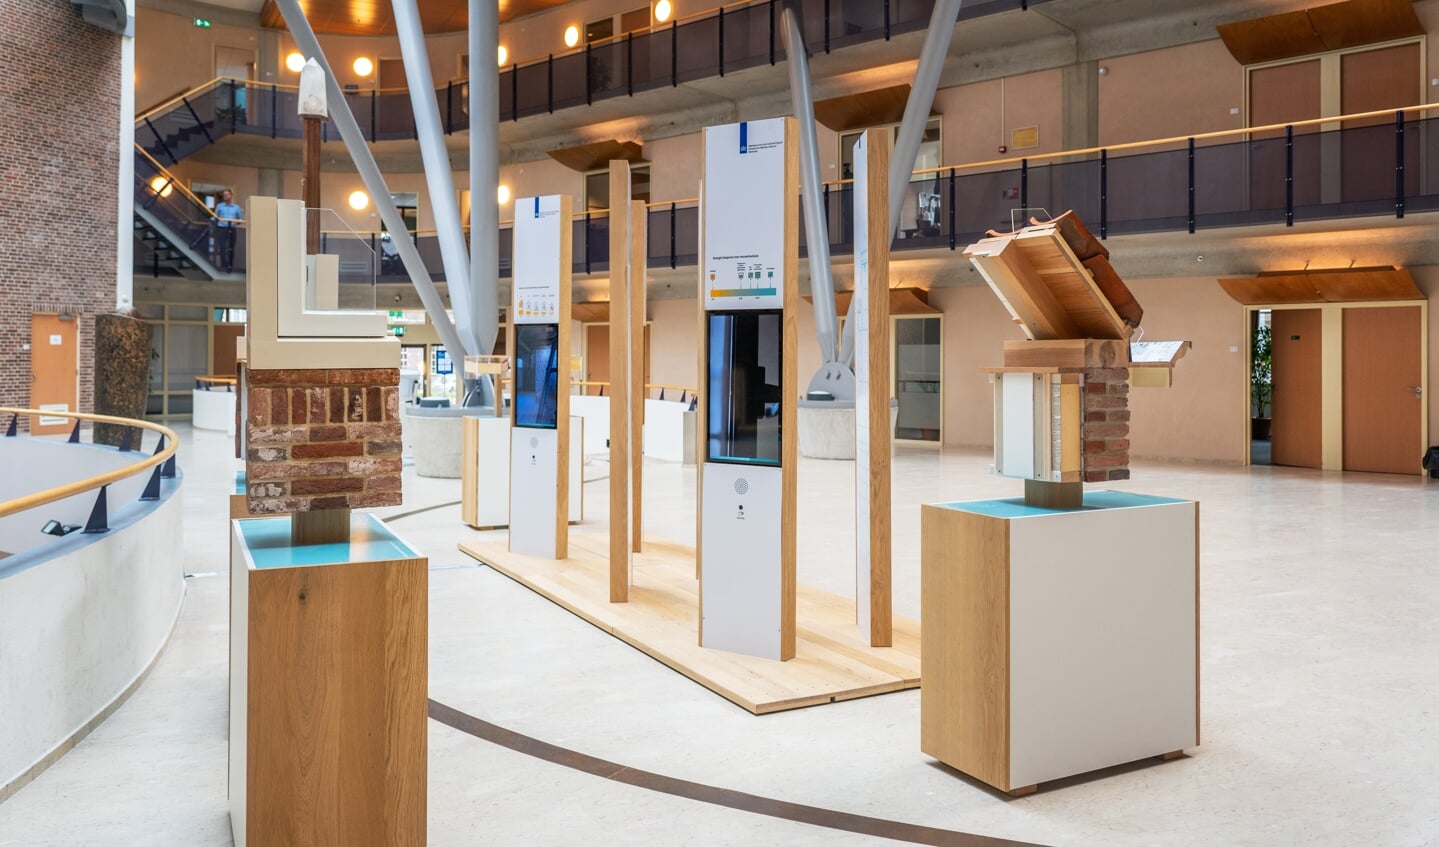 Tentoonstelling 'Monumenten verduurzamen' in de hal van het stadhuis Zutphen. Foto: Jolanda van Velzen